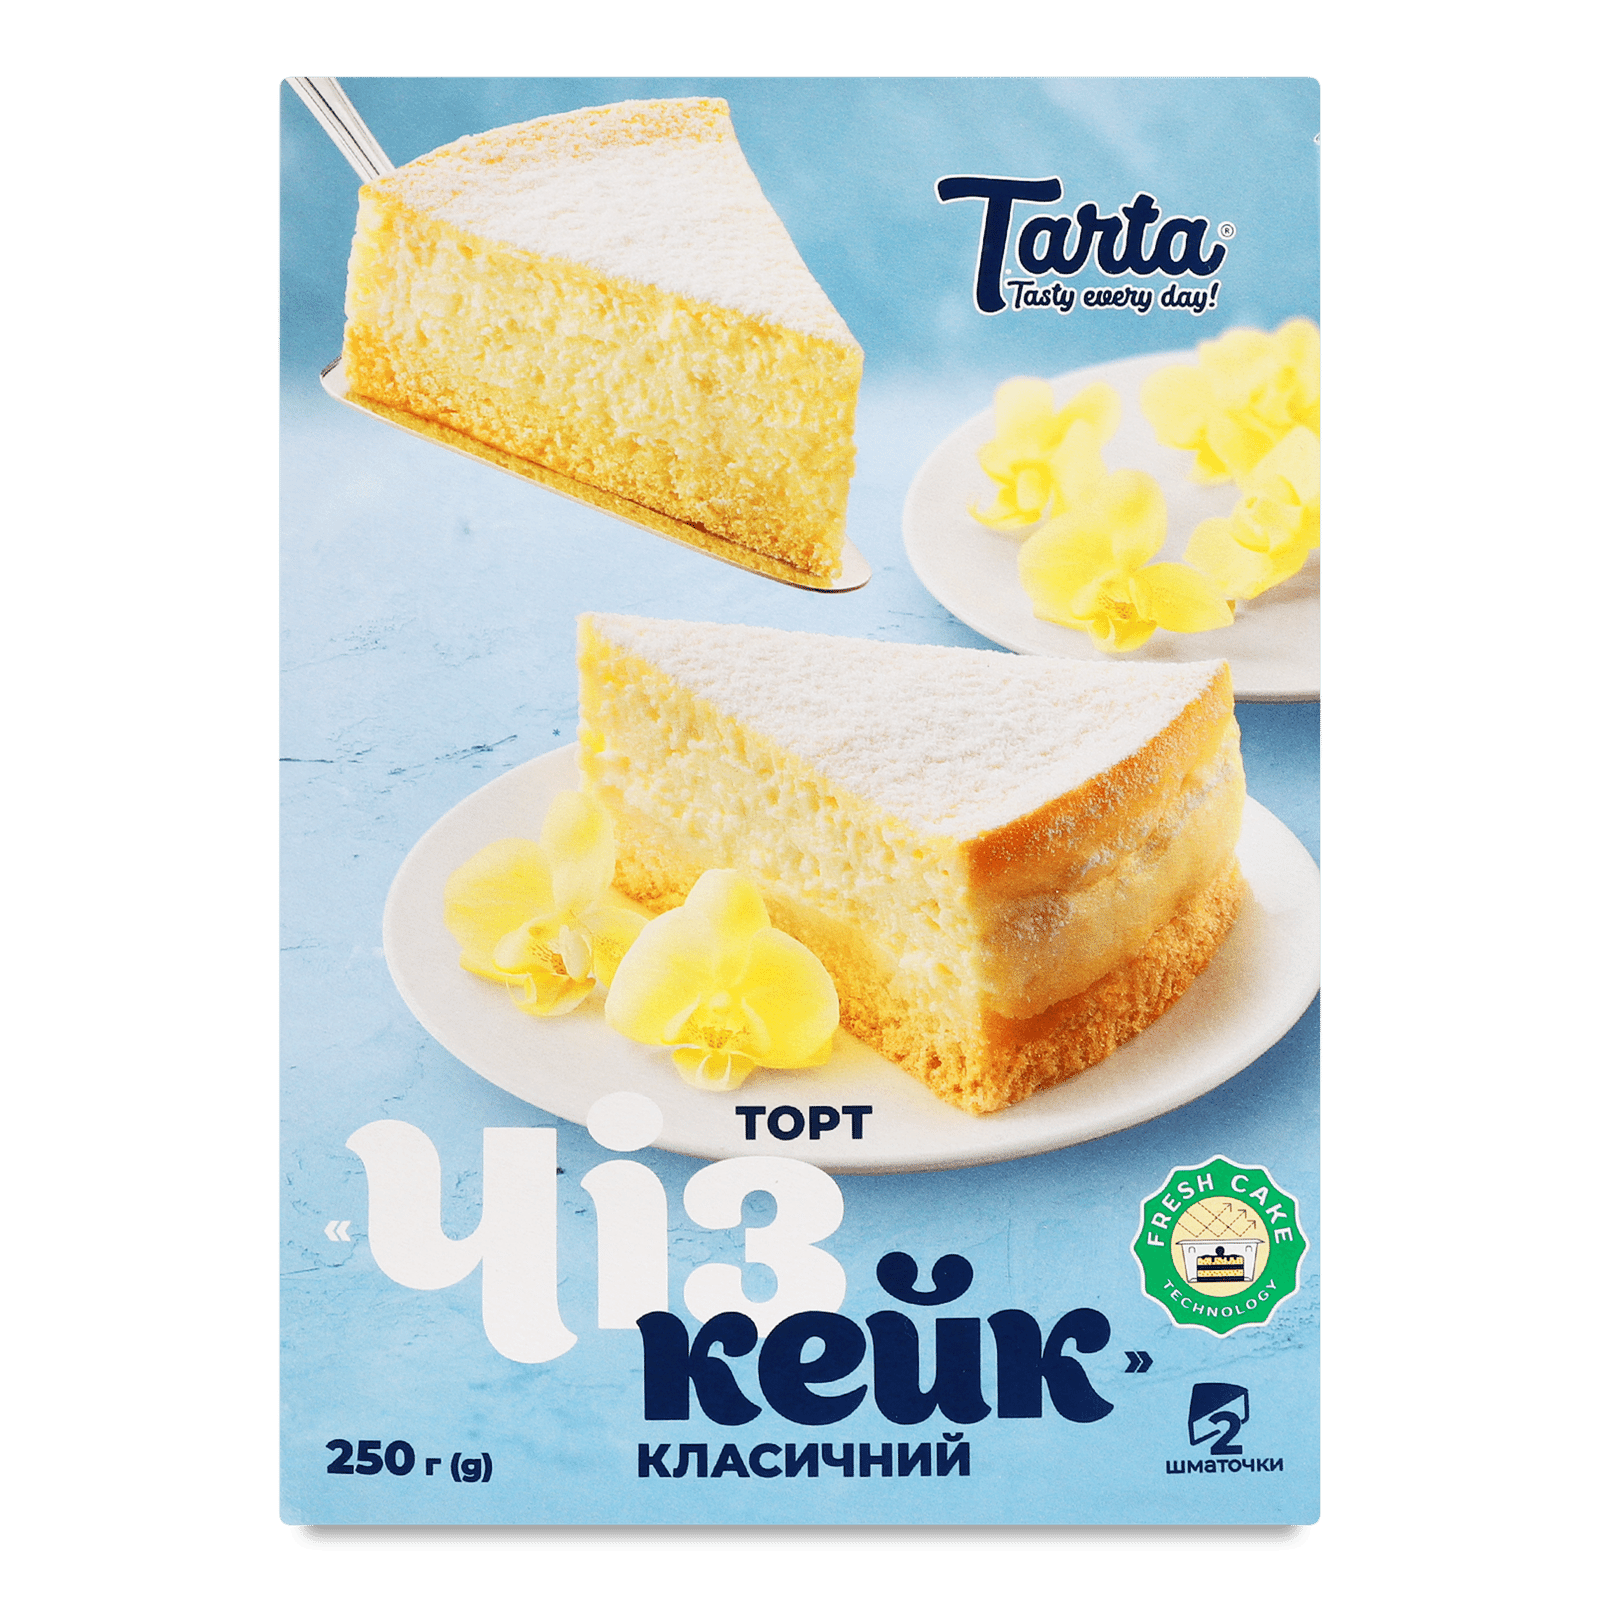 Торт Tarta Чізкейк класичний - 1